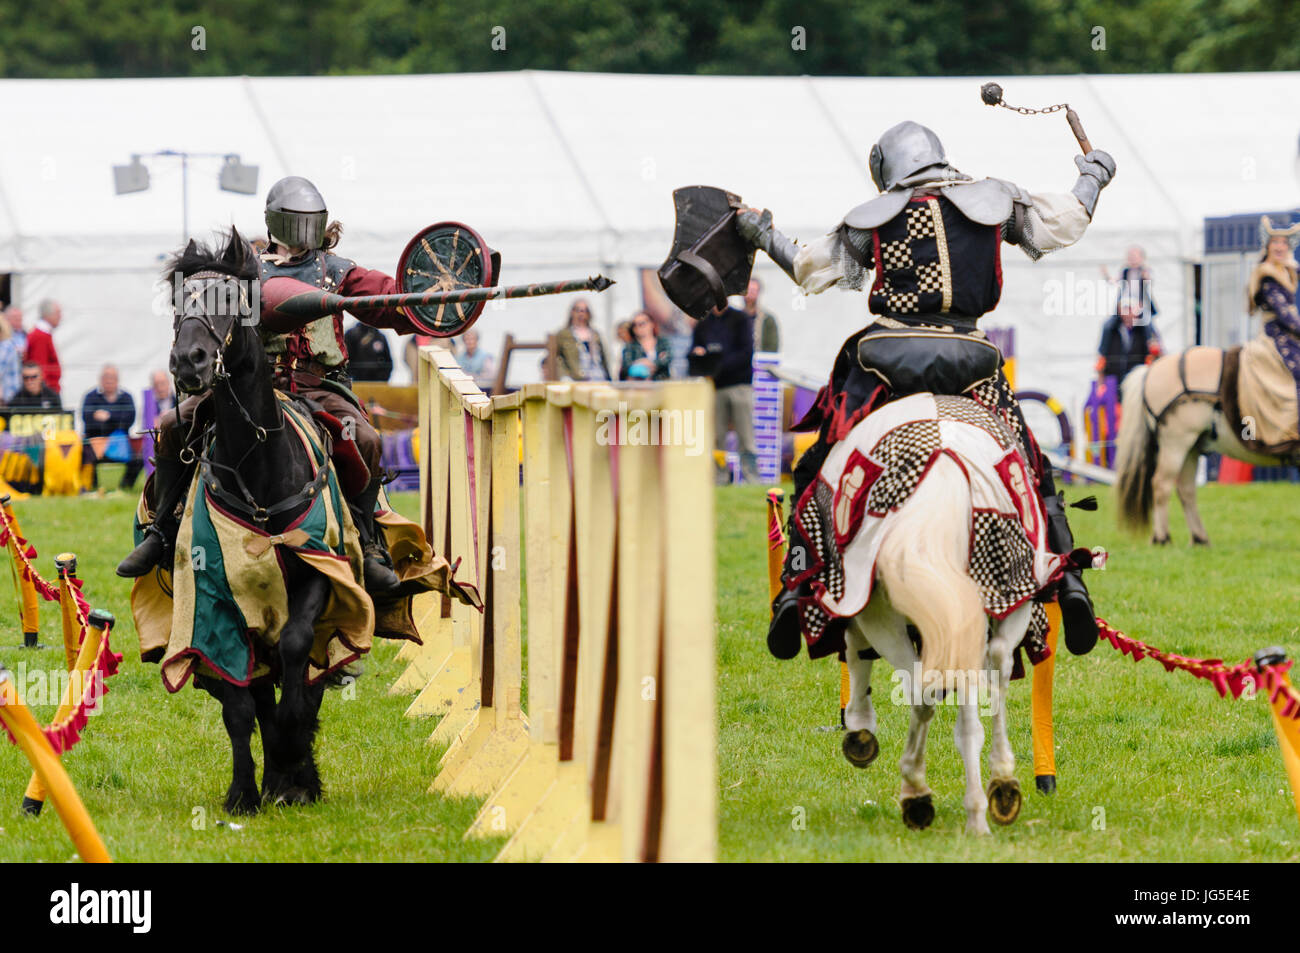 Deux chevaliers au combat à cheval, l'un armé d'une lance, l'autre avec une balle et de la chaîne. Banque D'Images